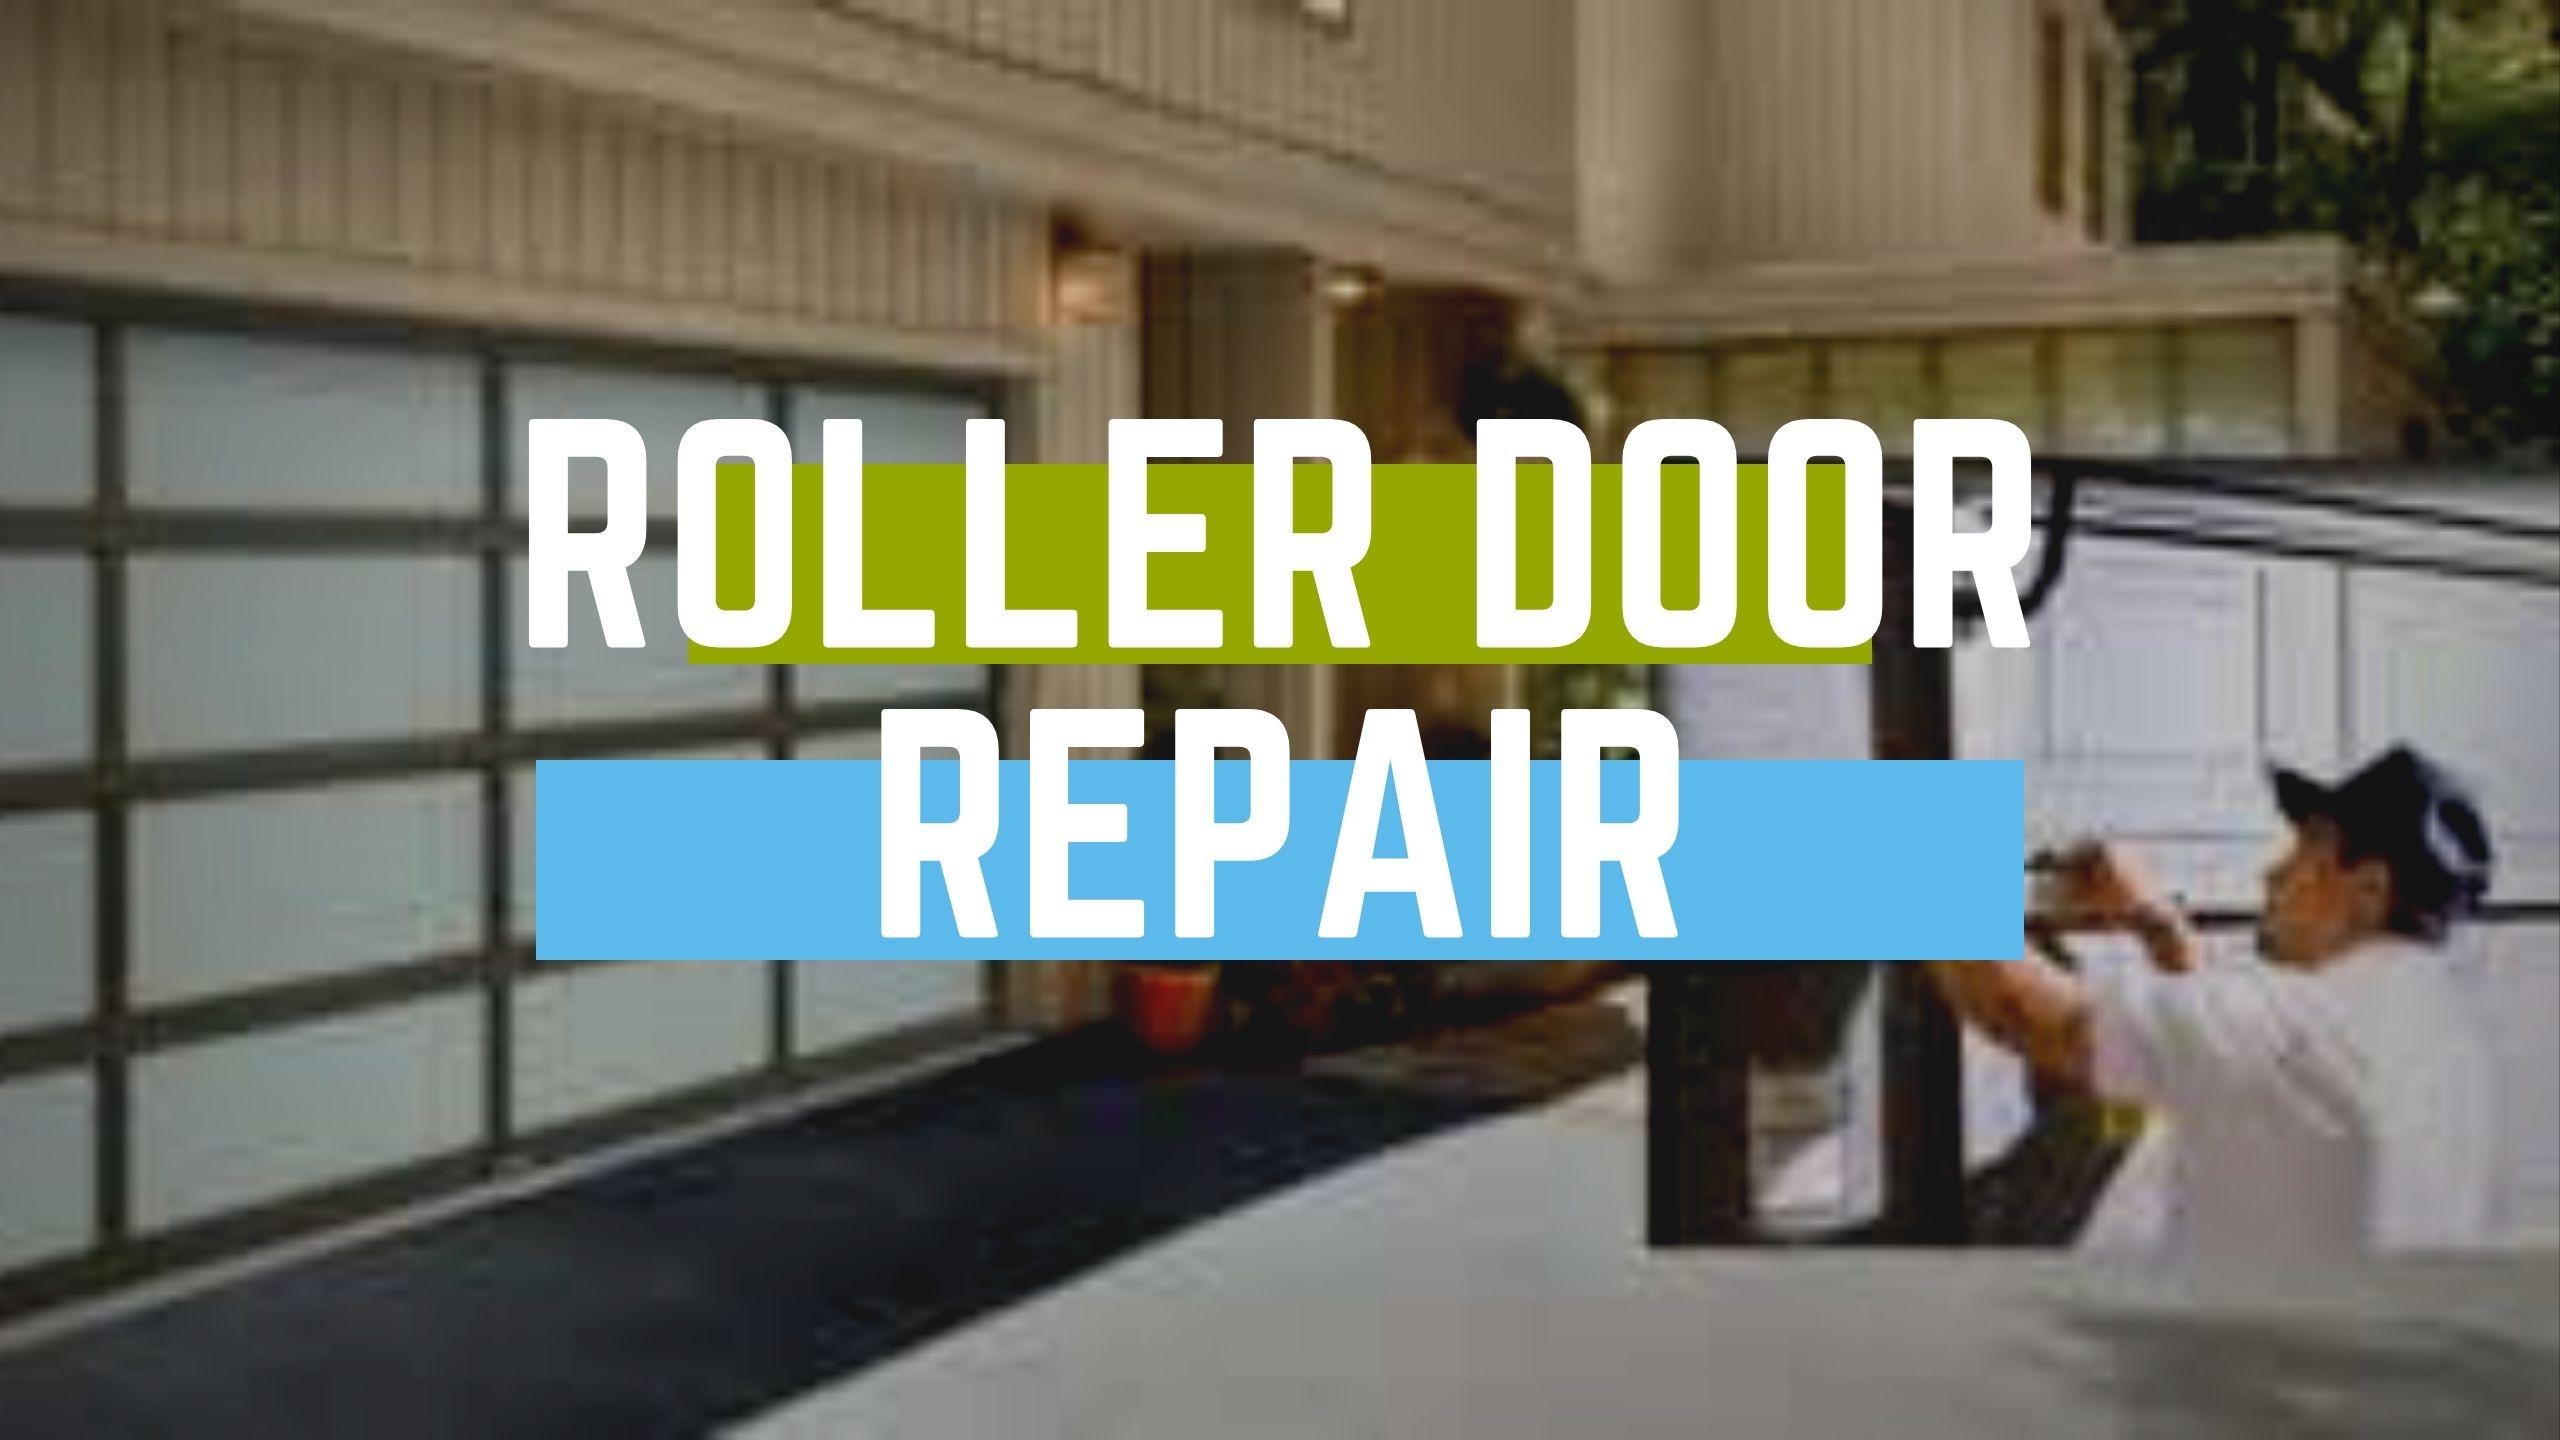 Roller door repair